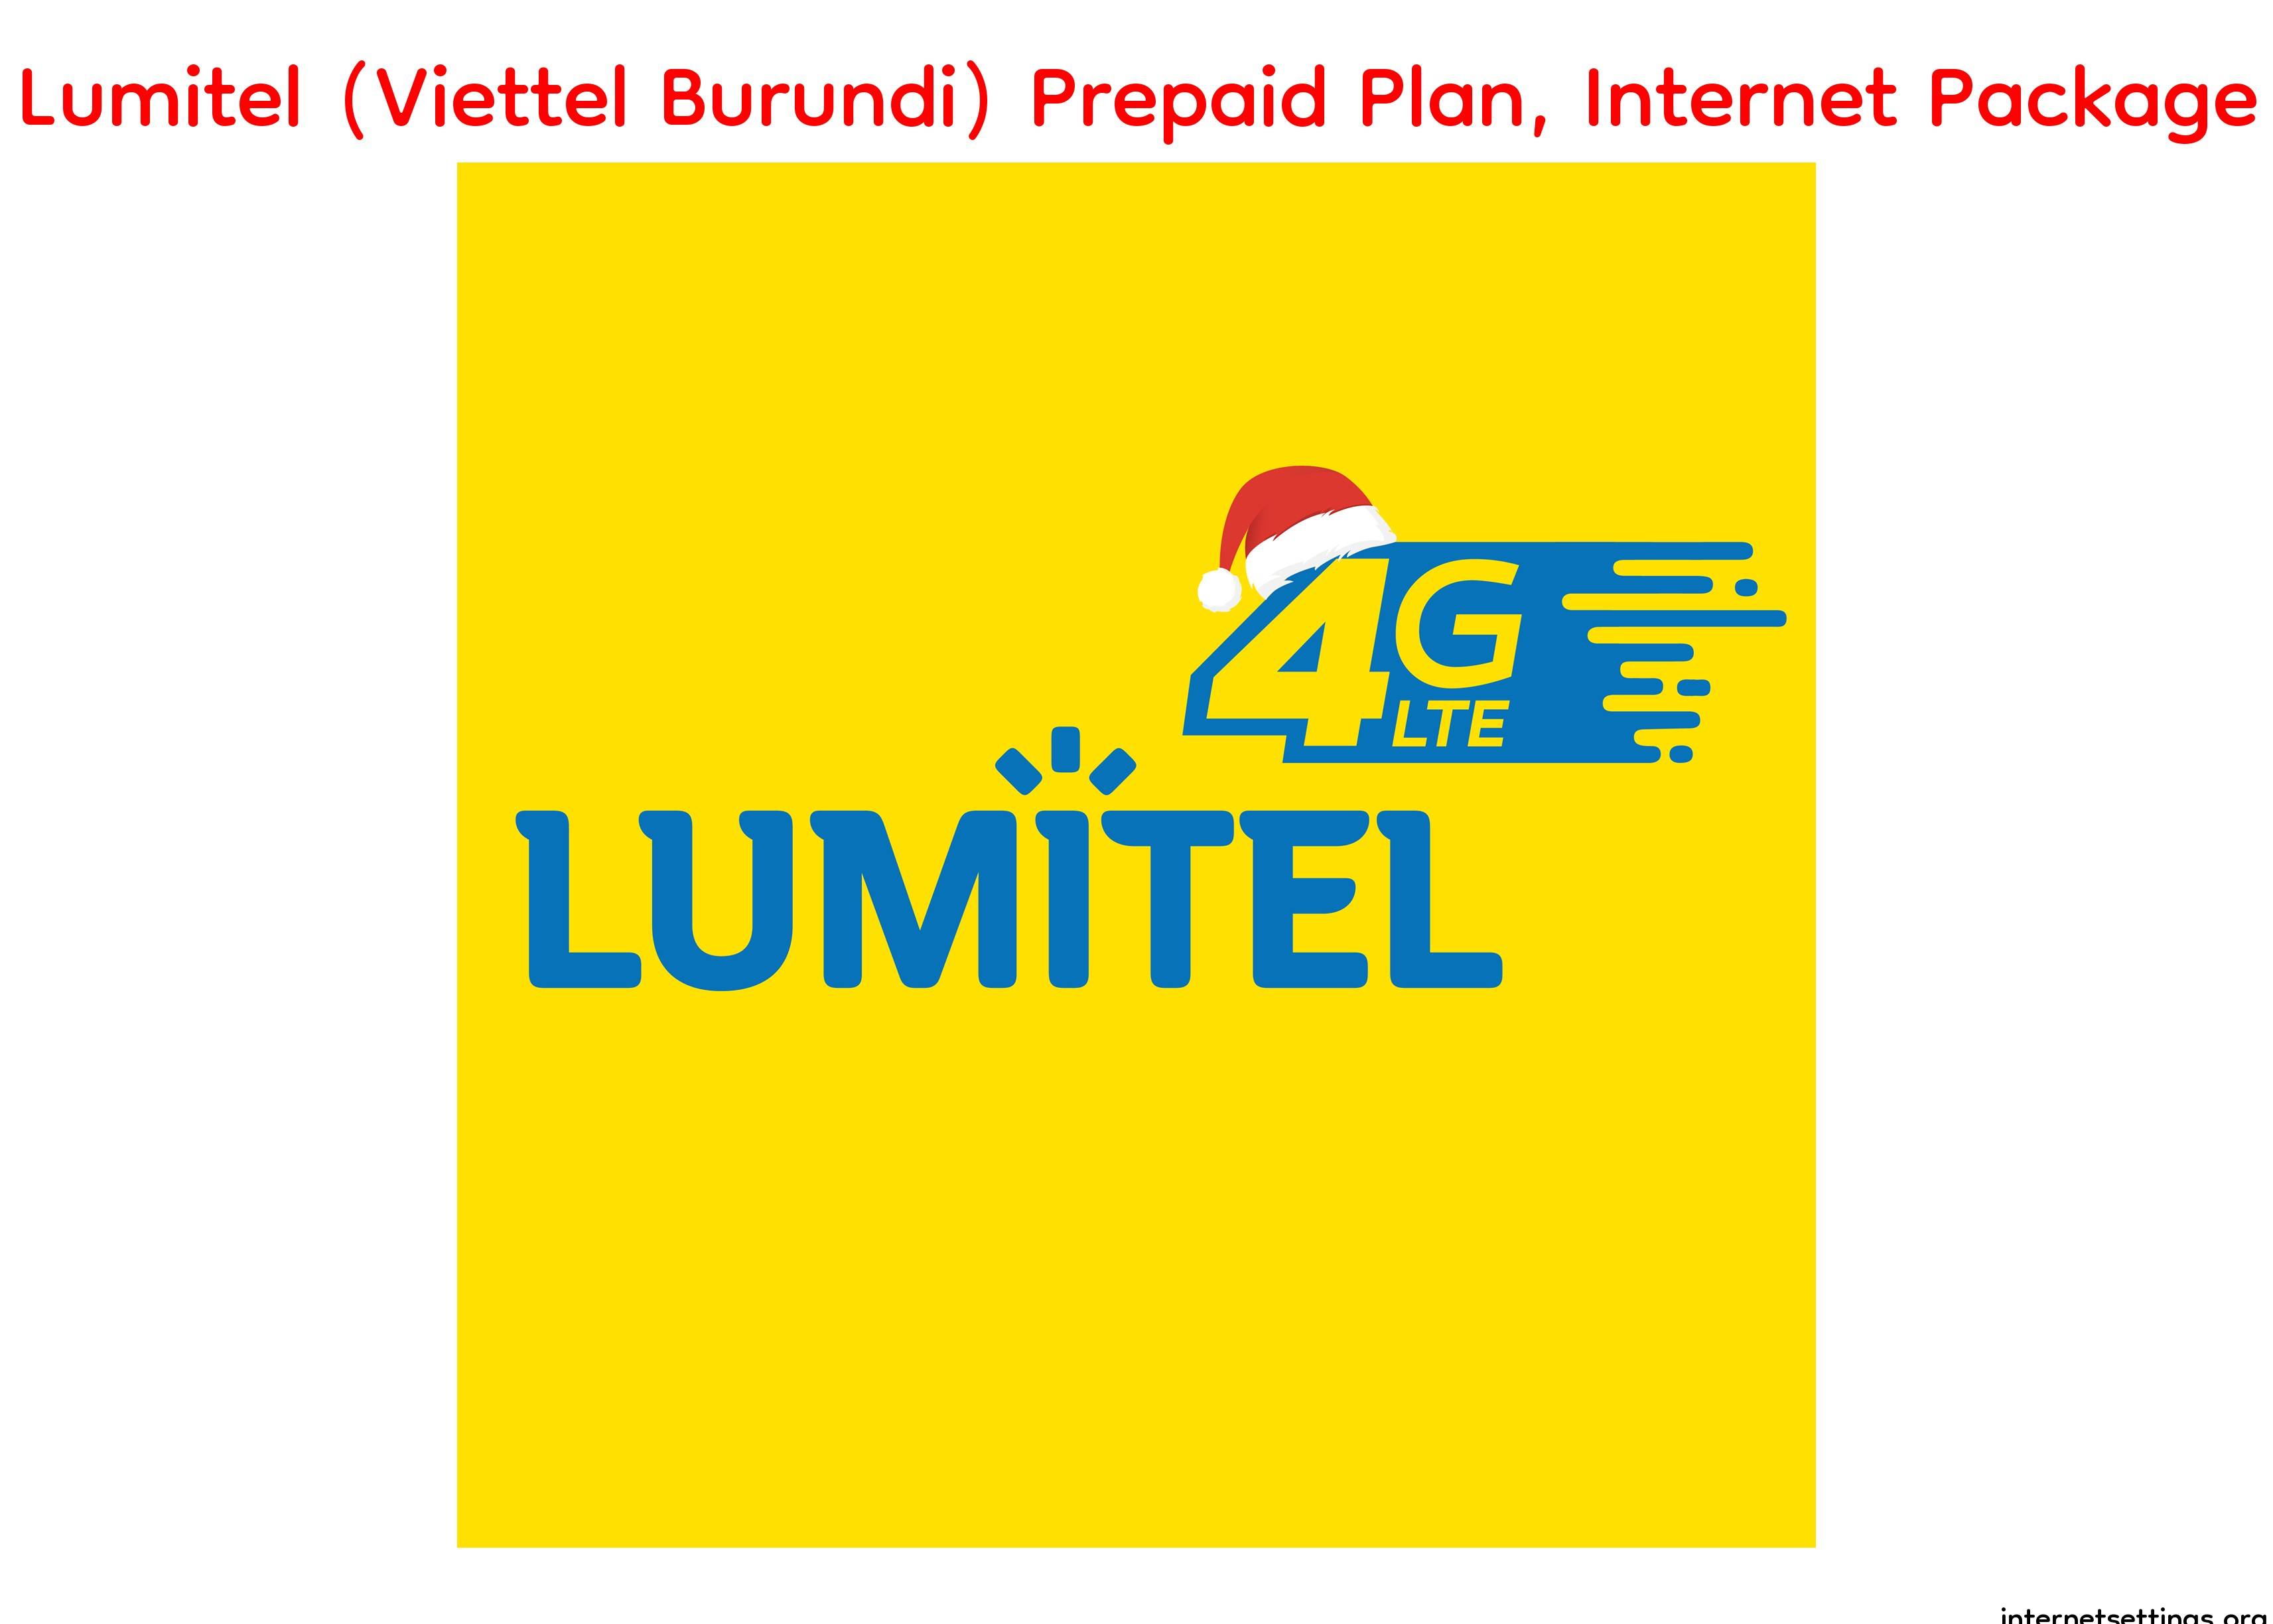 Lumitel (Viettel Burundi) Prepaid Plan and Data Pack